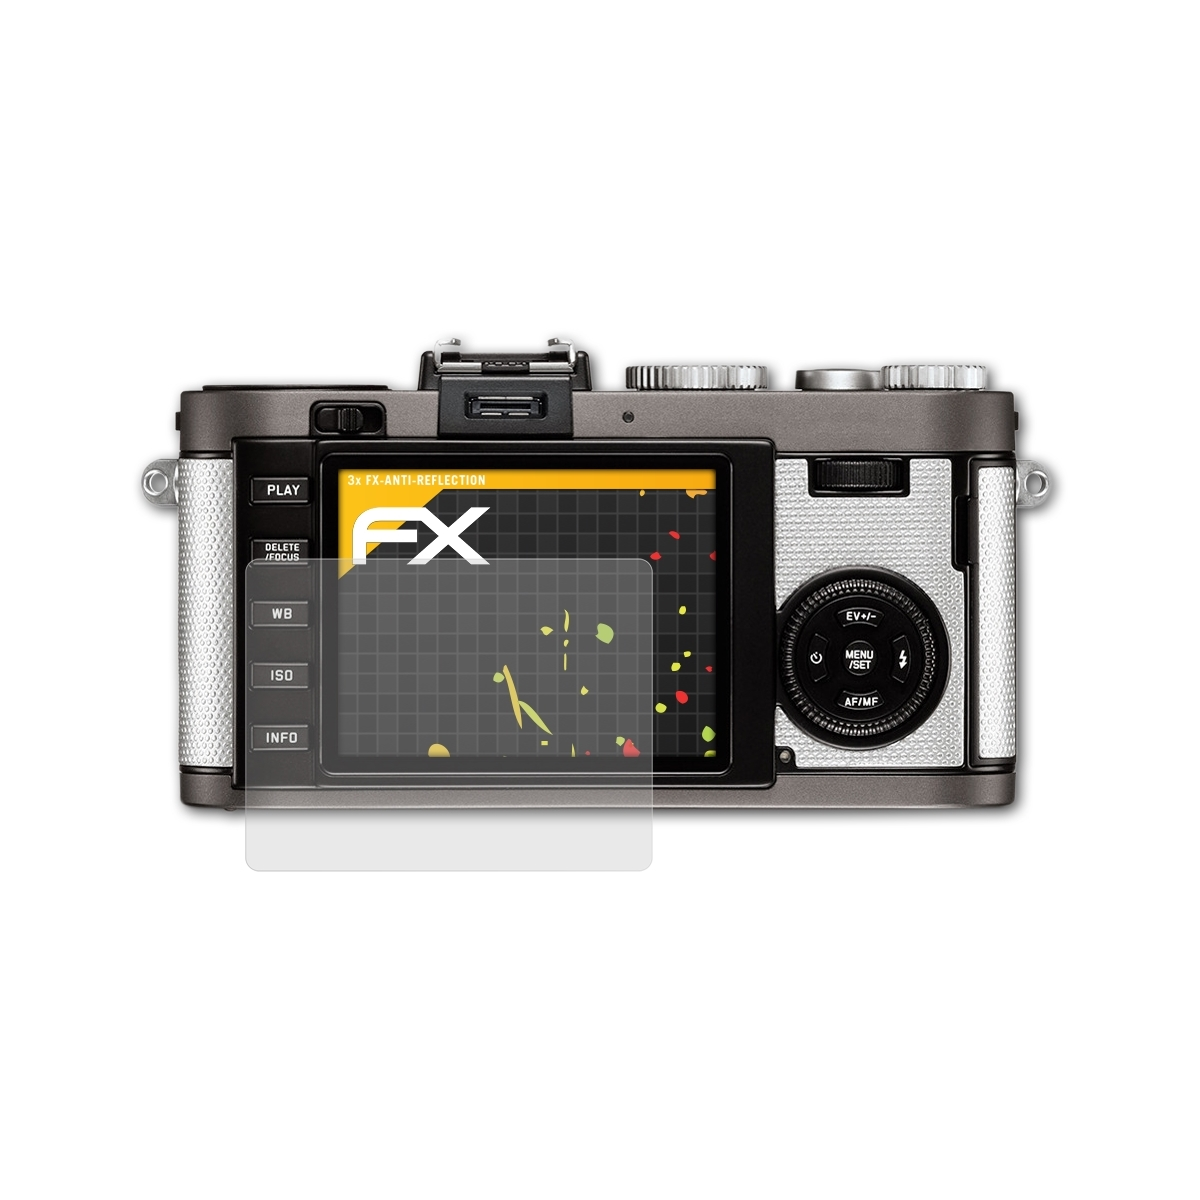 102)) FX-Antireflex ATFOLIX (Typ Displayschutz(für Leica X-E 3x